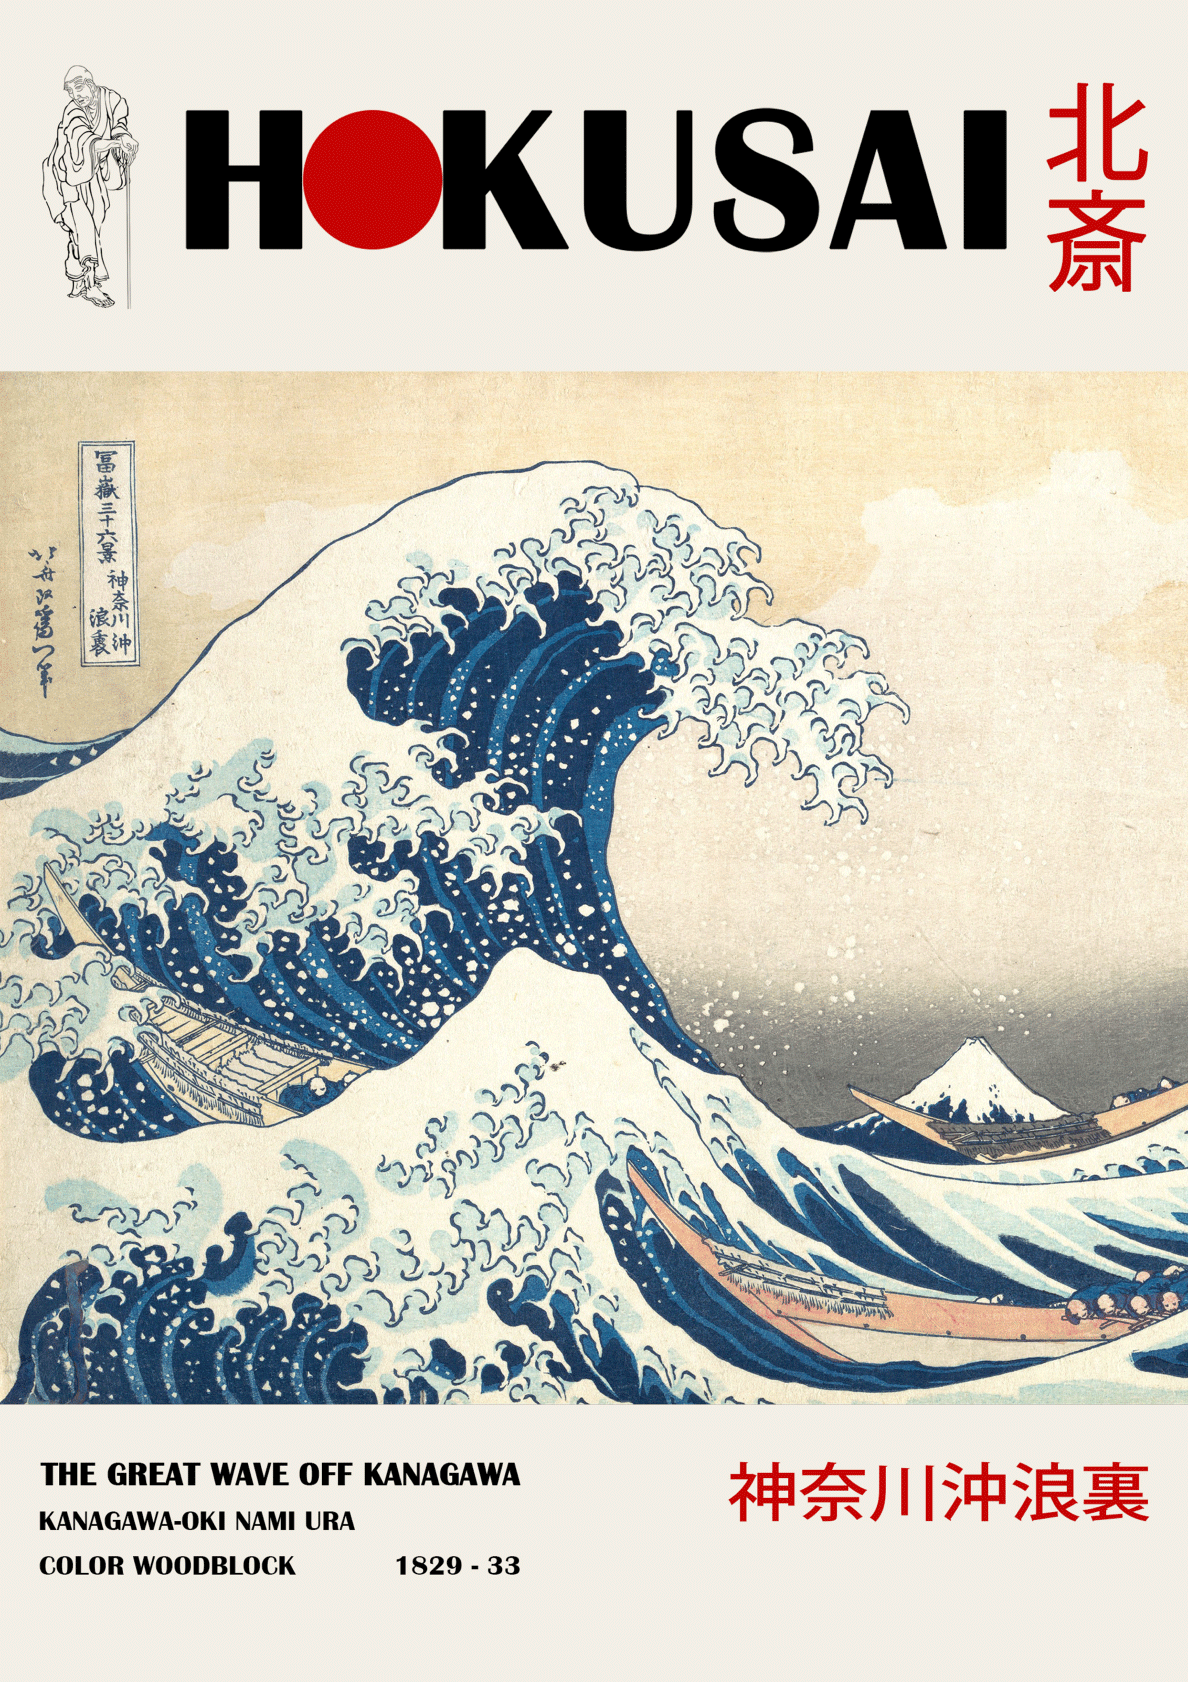 Billede af The great wave off kanagawa - Hokusai kunstplakat